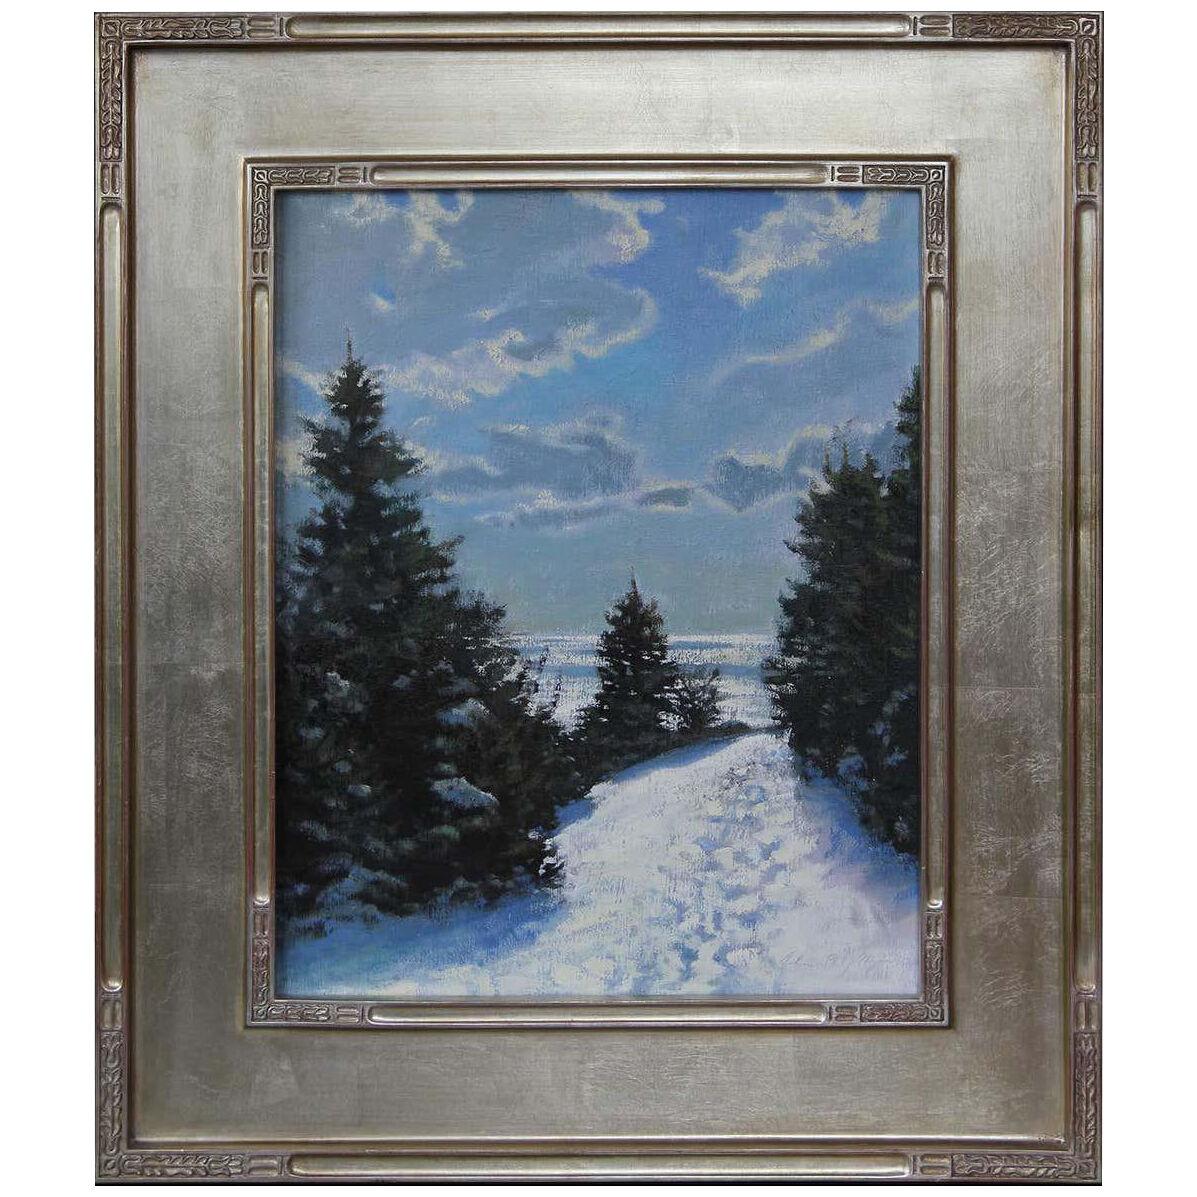 2006 "Nelson Pond Trail" Landscape Oil Painting by John Philip Hagen, Framed